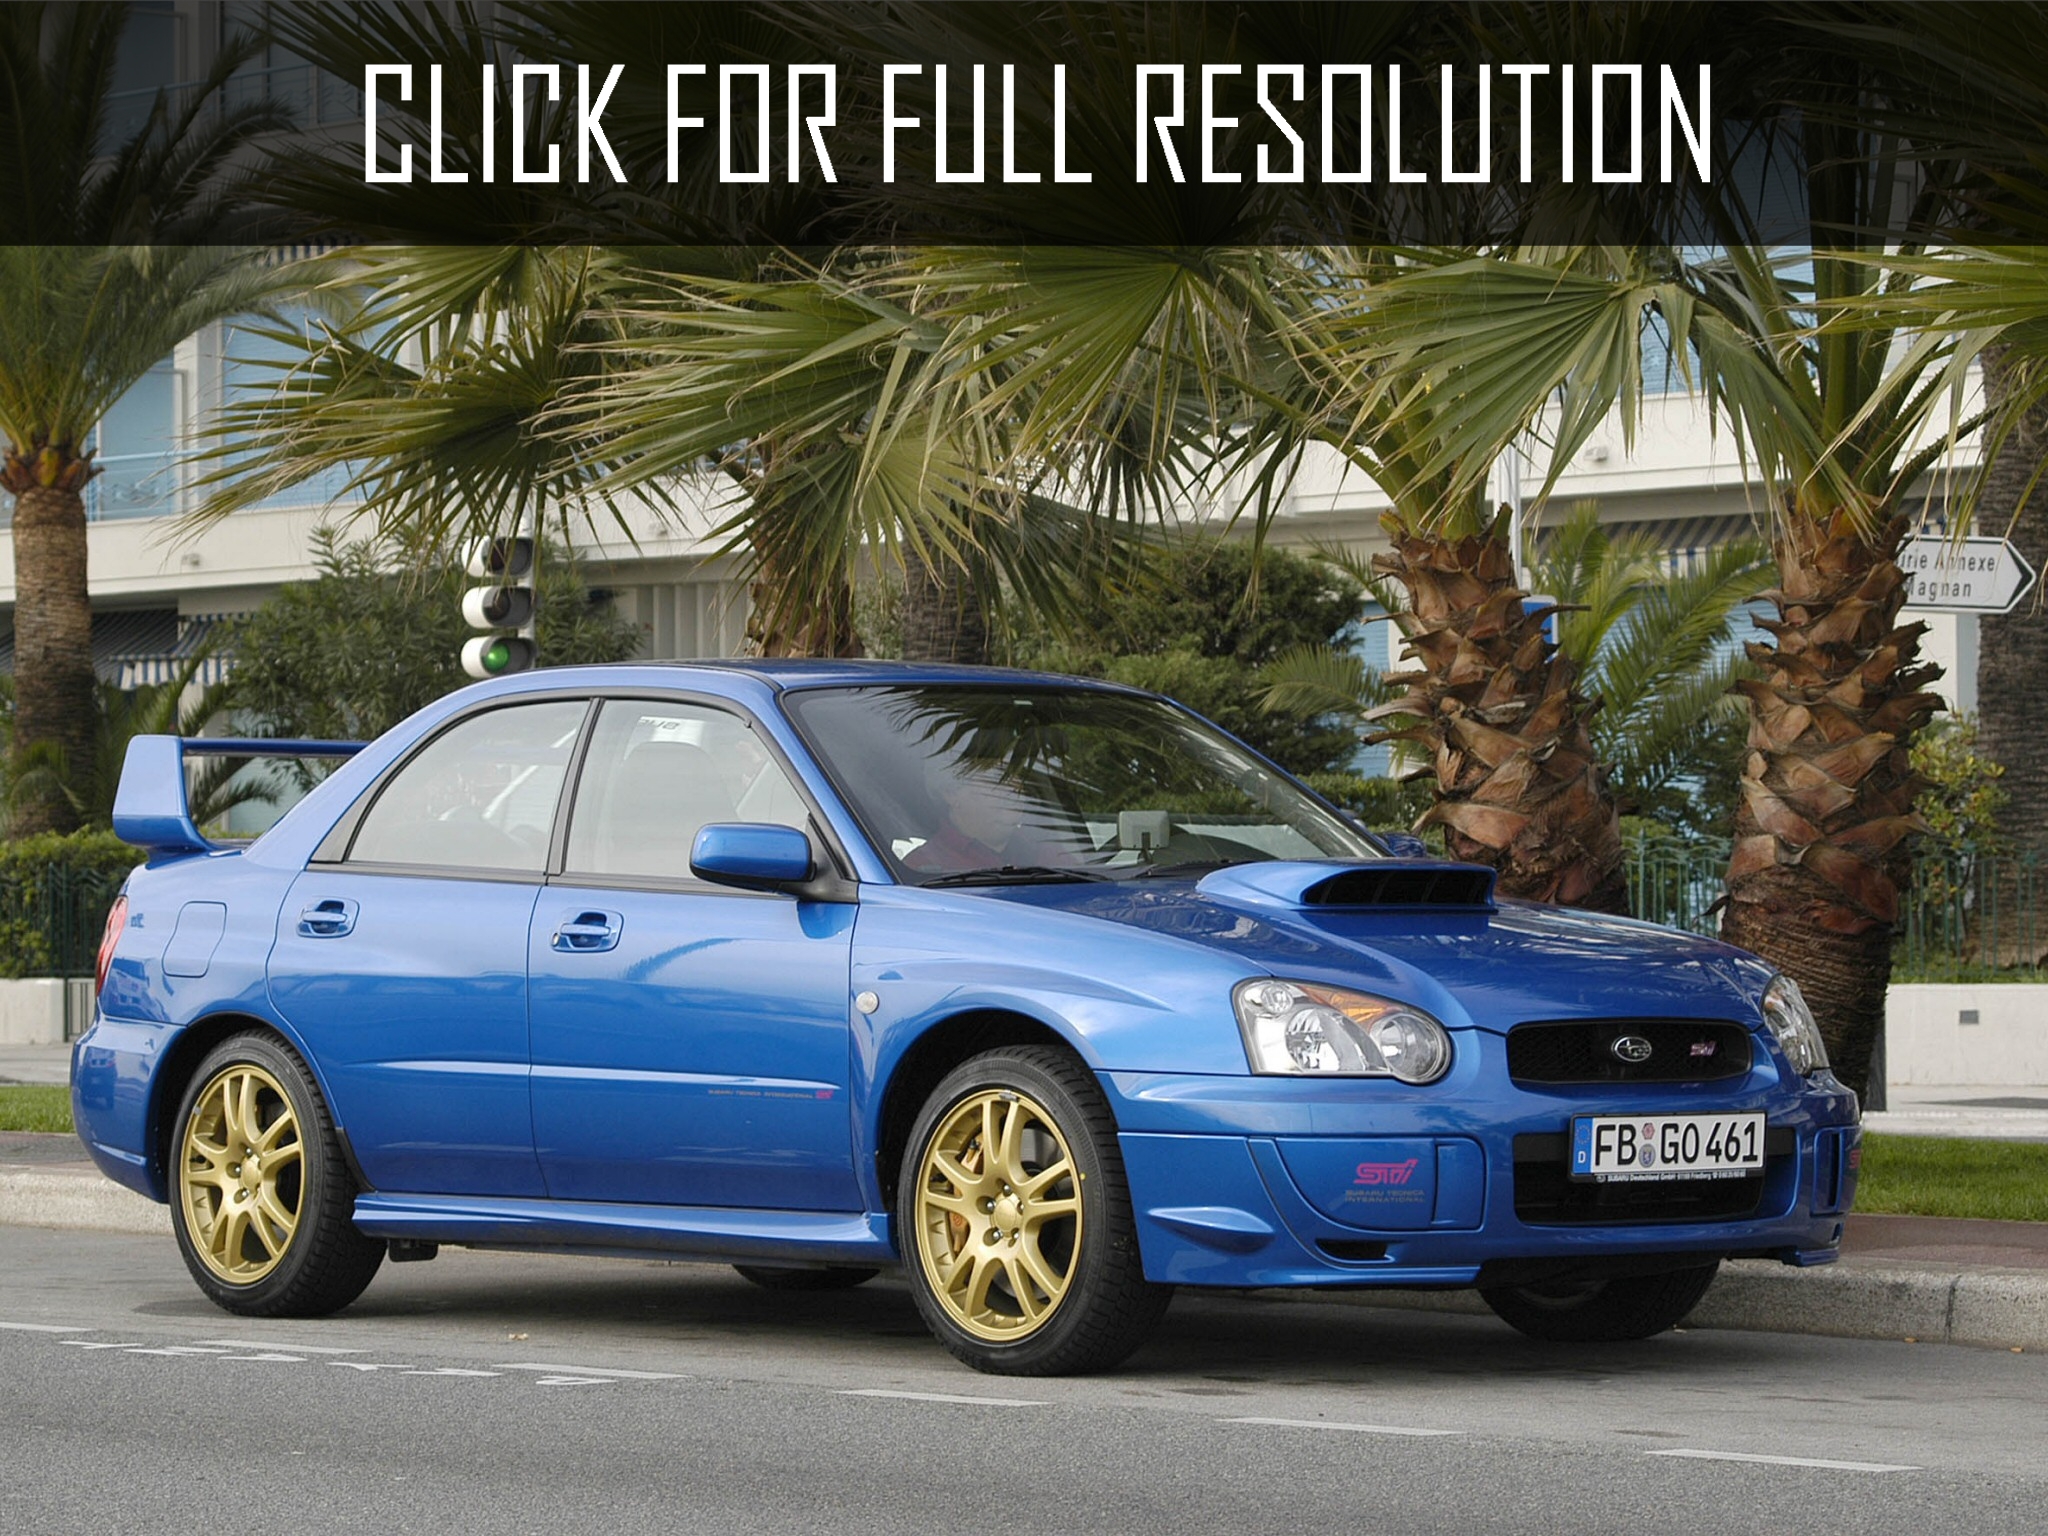 2003 Subaru Impreza Wrx Sti news, reviews, msrp, ratings